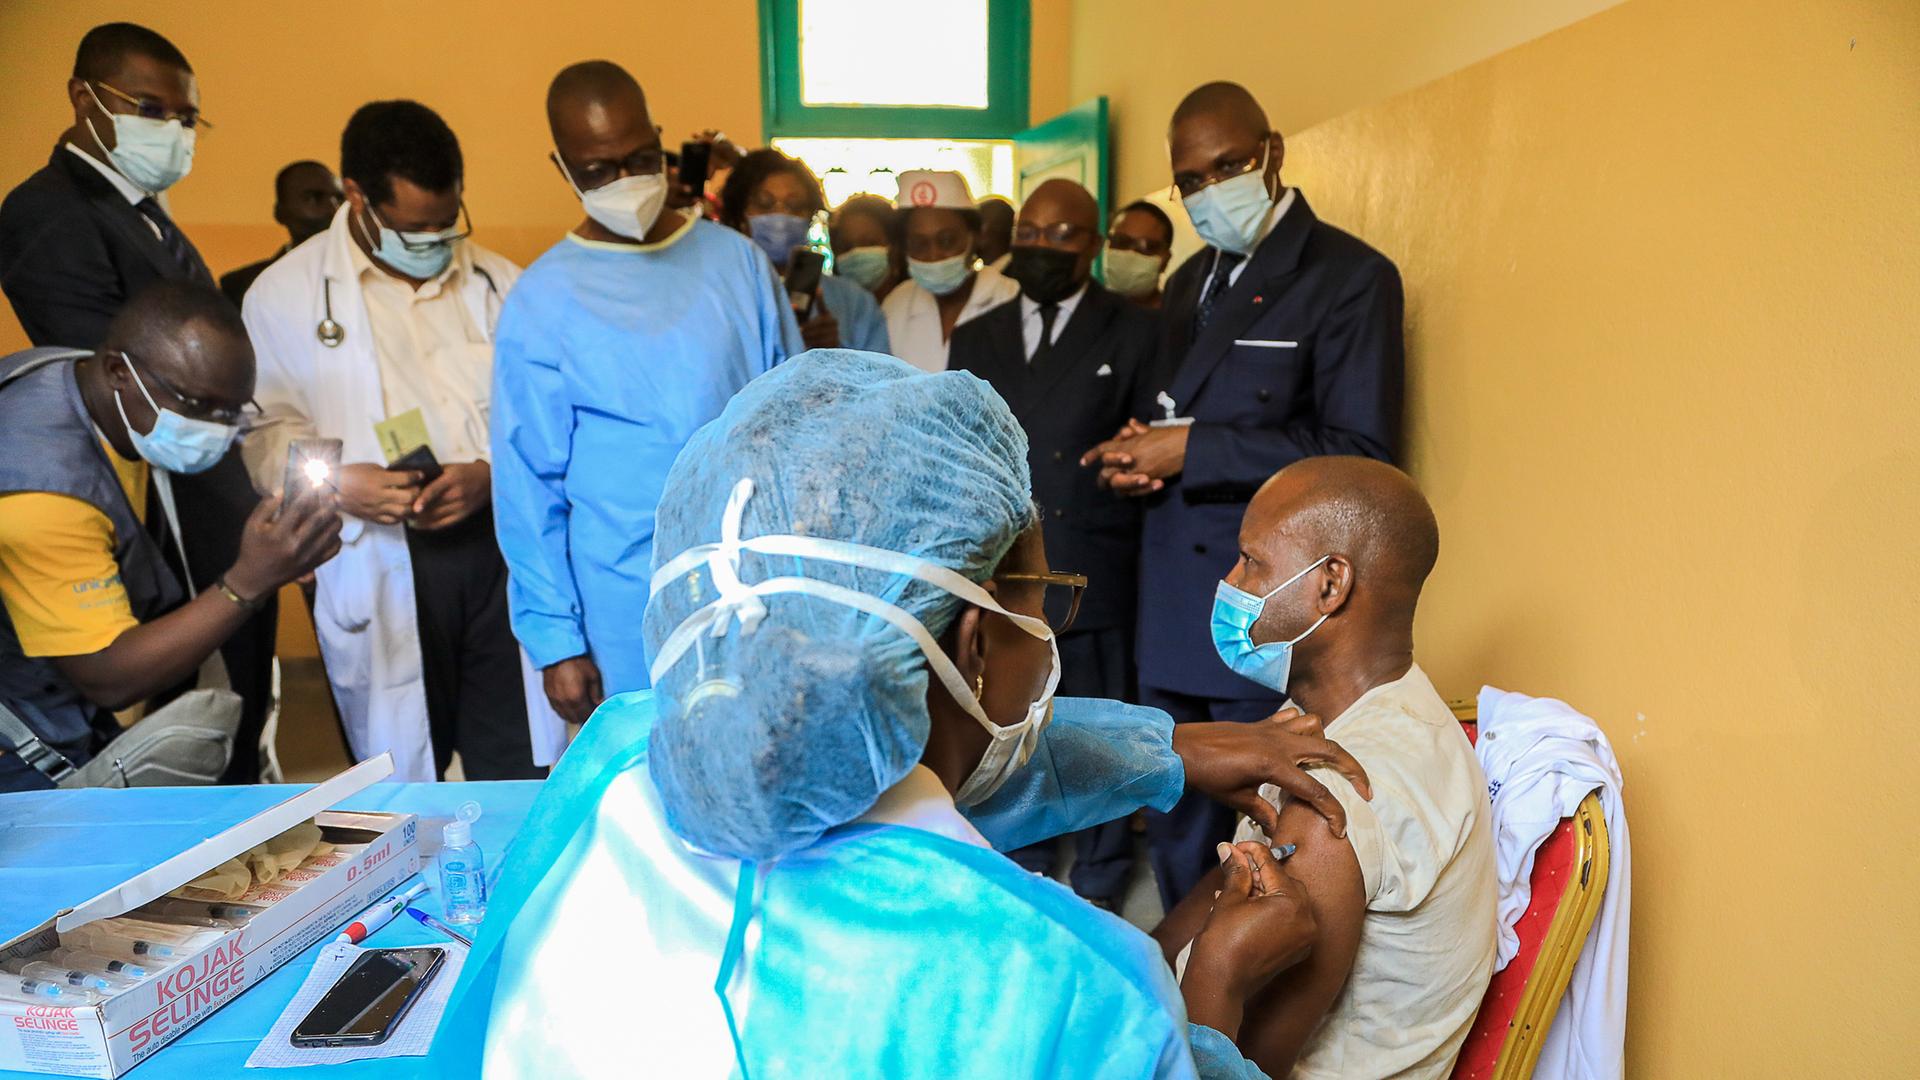 Der kamerunische Gesundheitsminister Manaouda Malachie besucht das Zentralkrankenhaus in Yaoundé, während das Gesundheitspersonal mit dem chinesischen Sinopharm-Impfstoff geimpft wird.